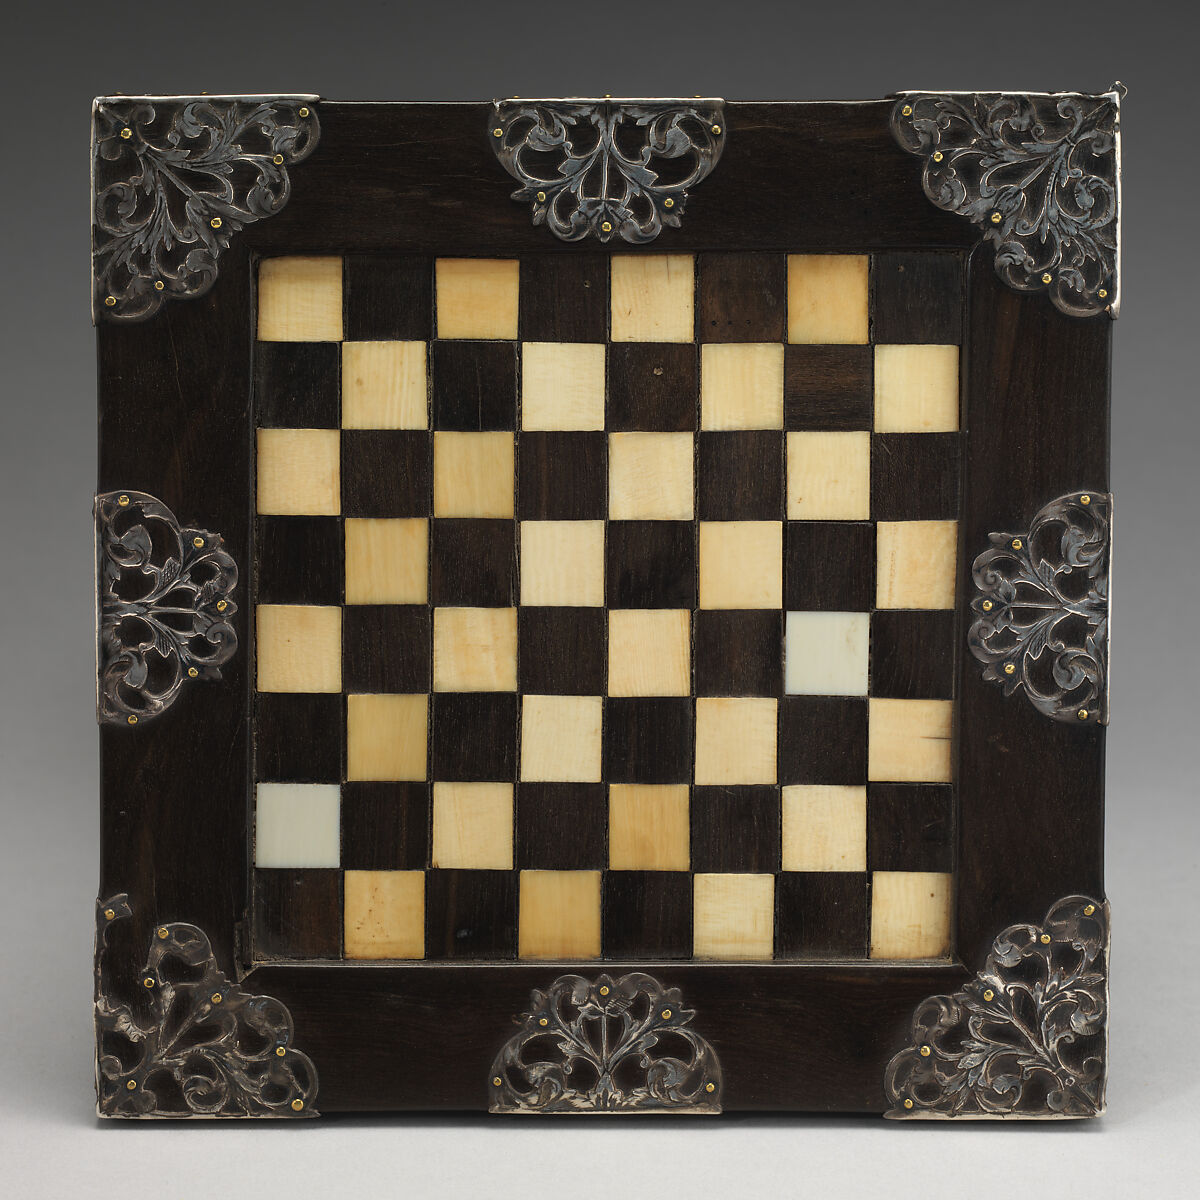 Chessboard, Ivory, ebony, silver, British 